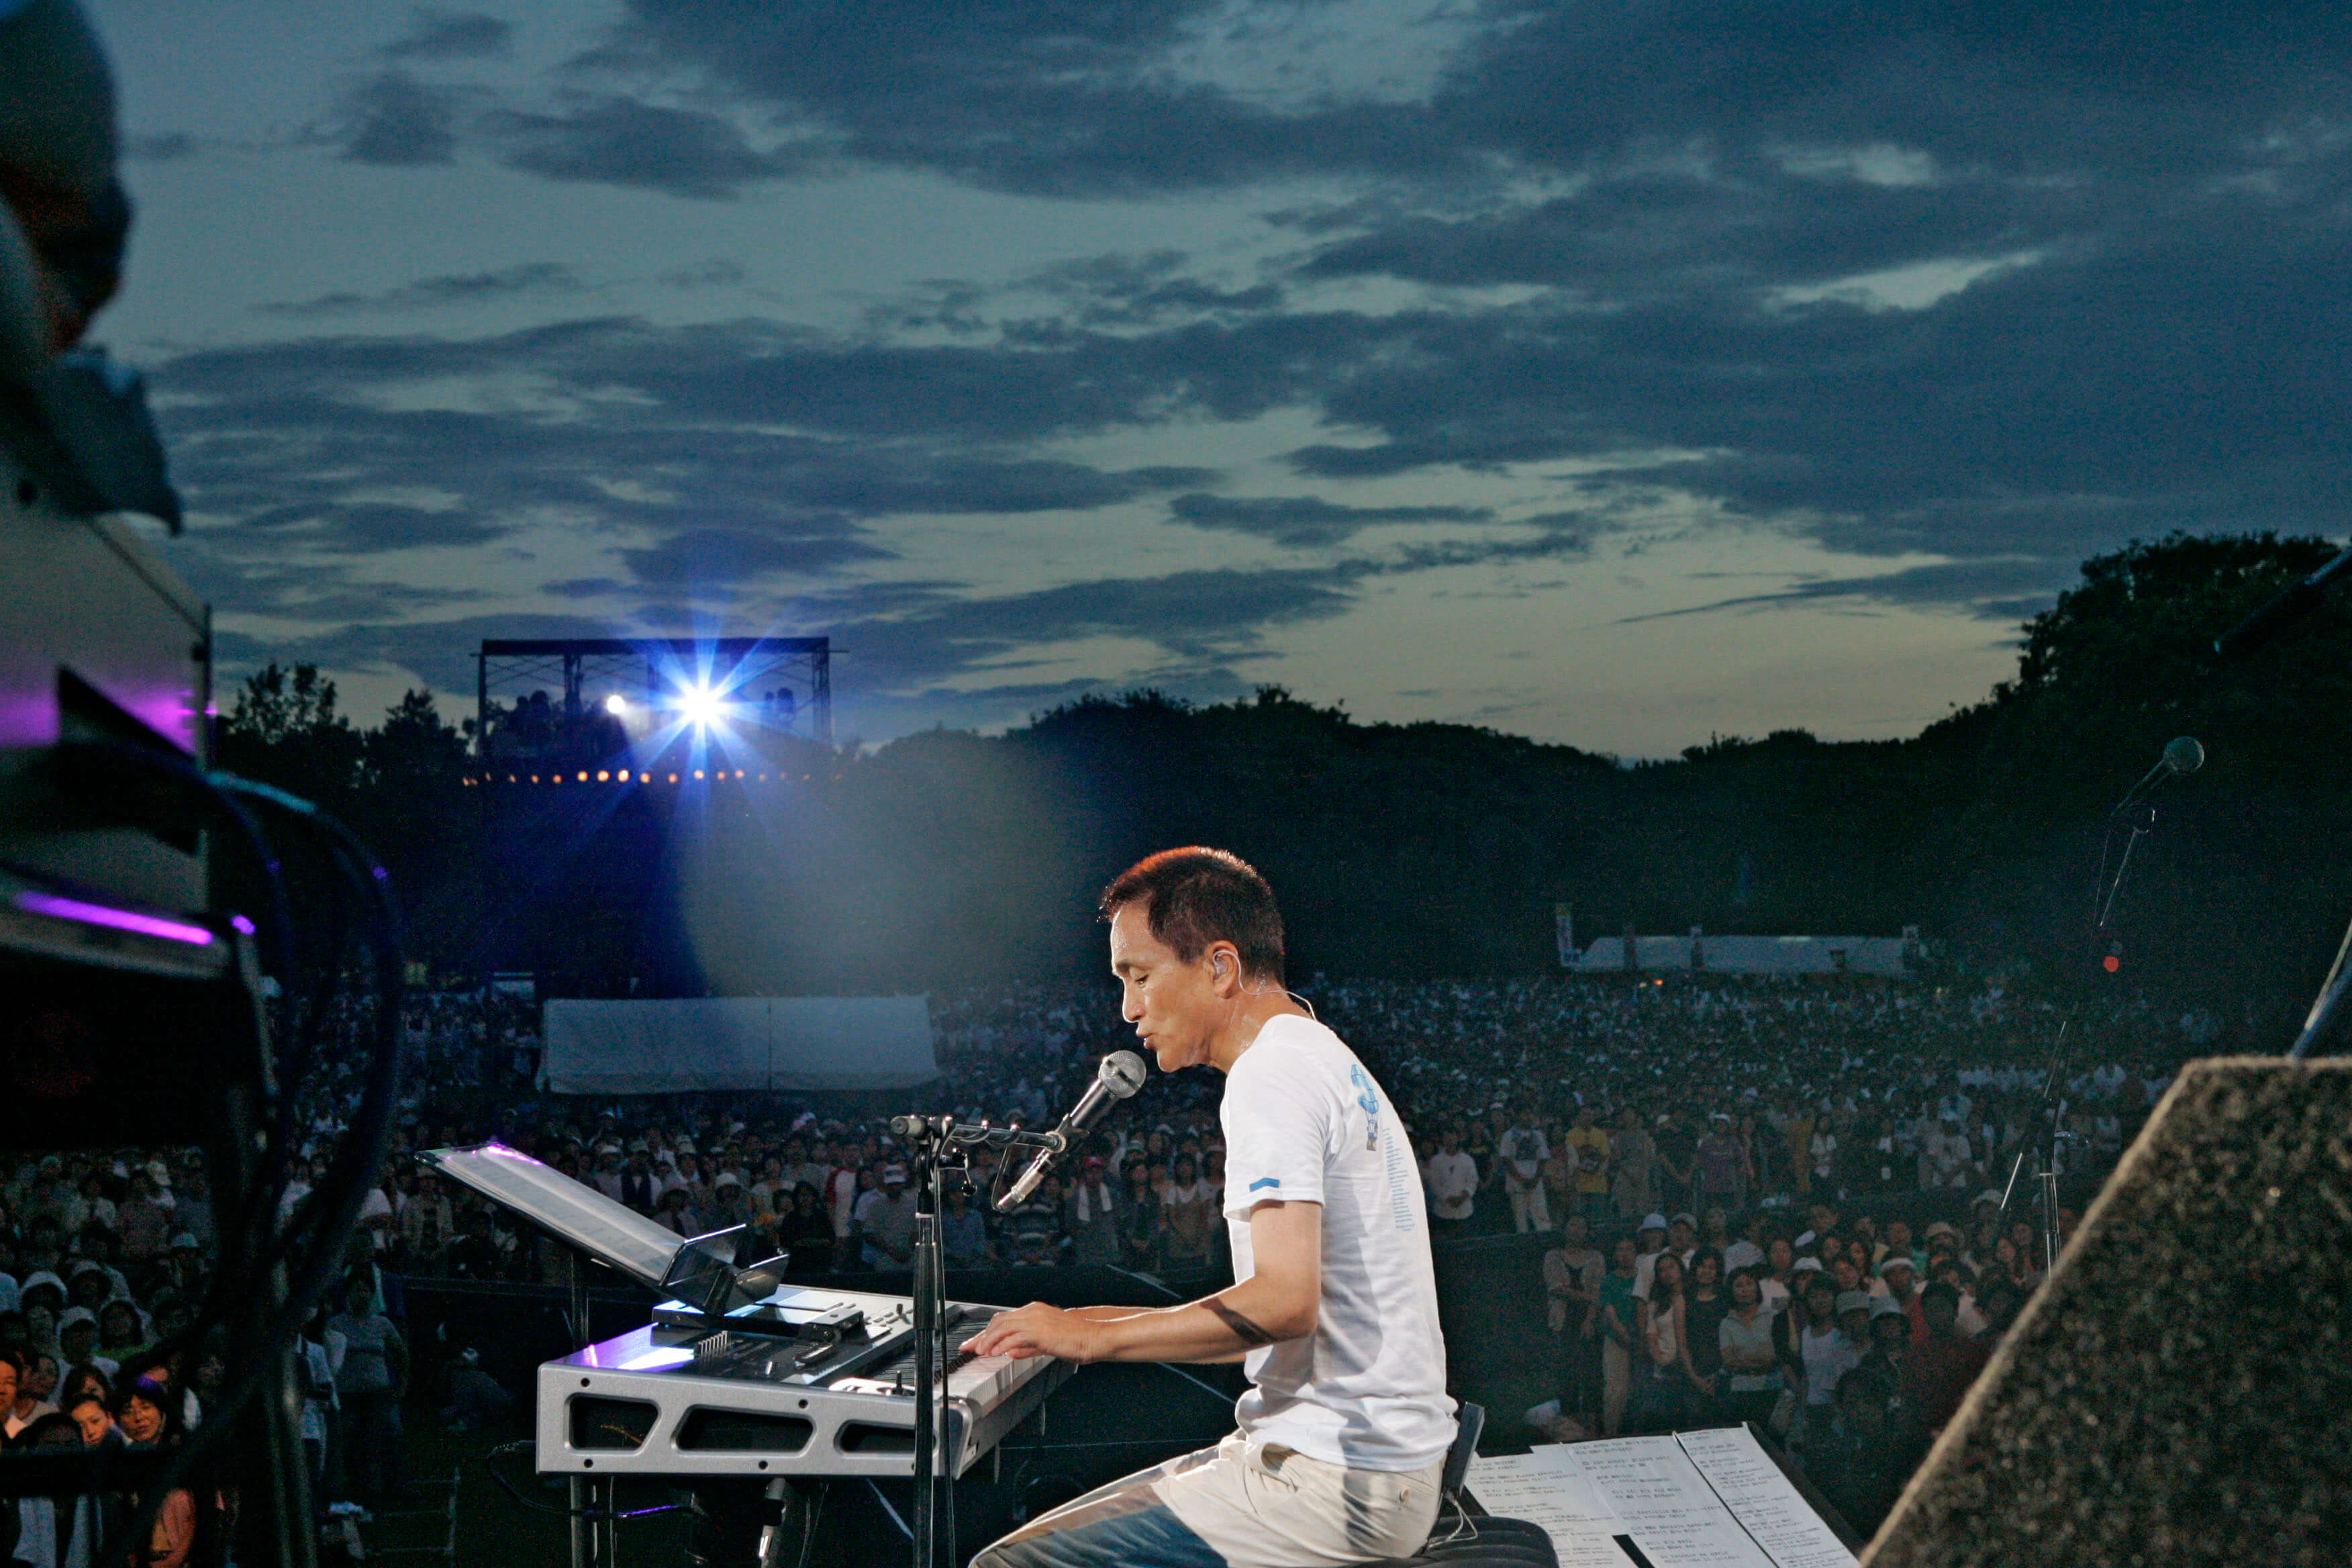 全国ツアー 「明治安田生命Presents Kazumasa Oda Tour 2005「K.ODA TOUR 2005 『大好きな君に』」を実施